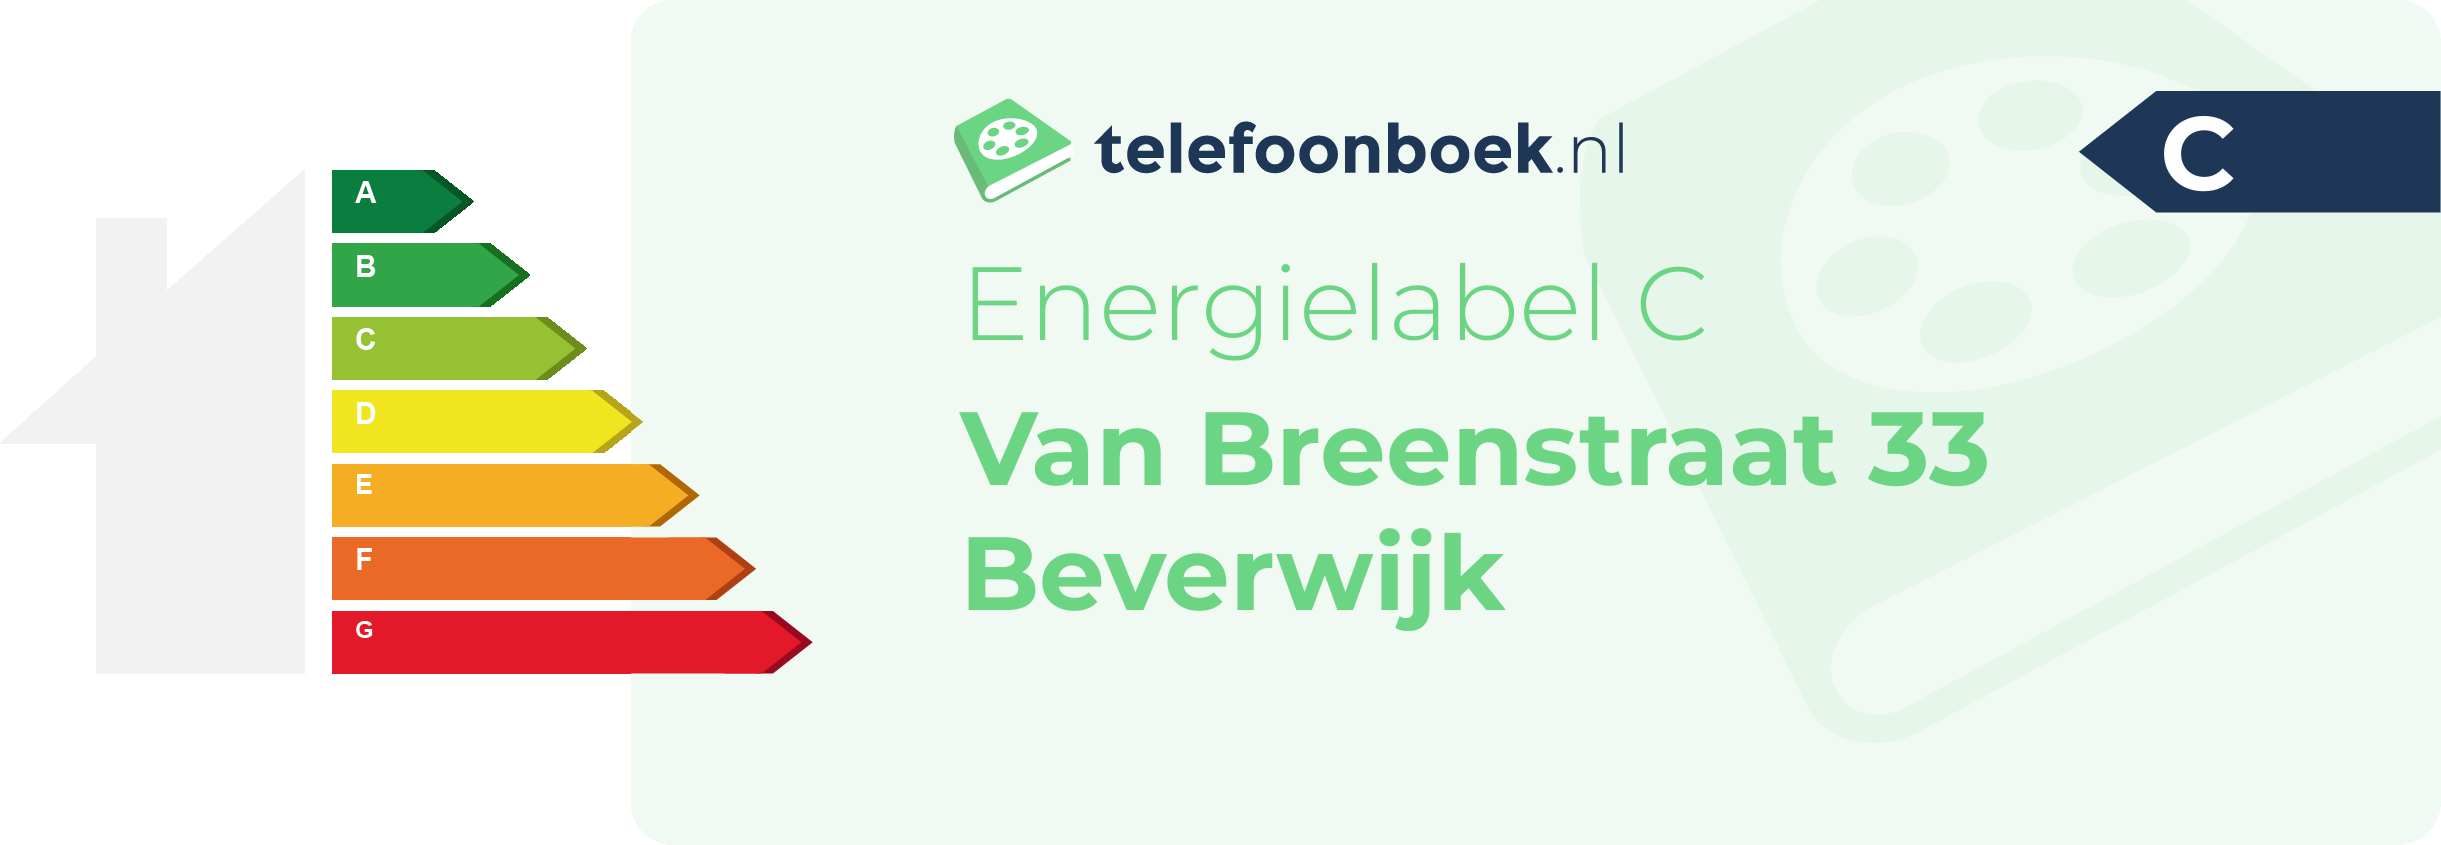 Energielabel Van Breenstraat 33 Beverwijk